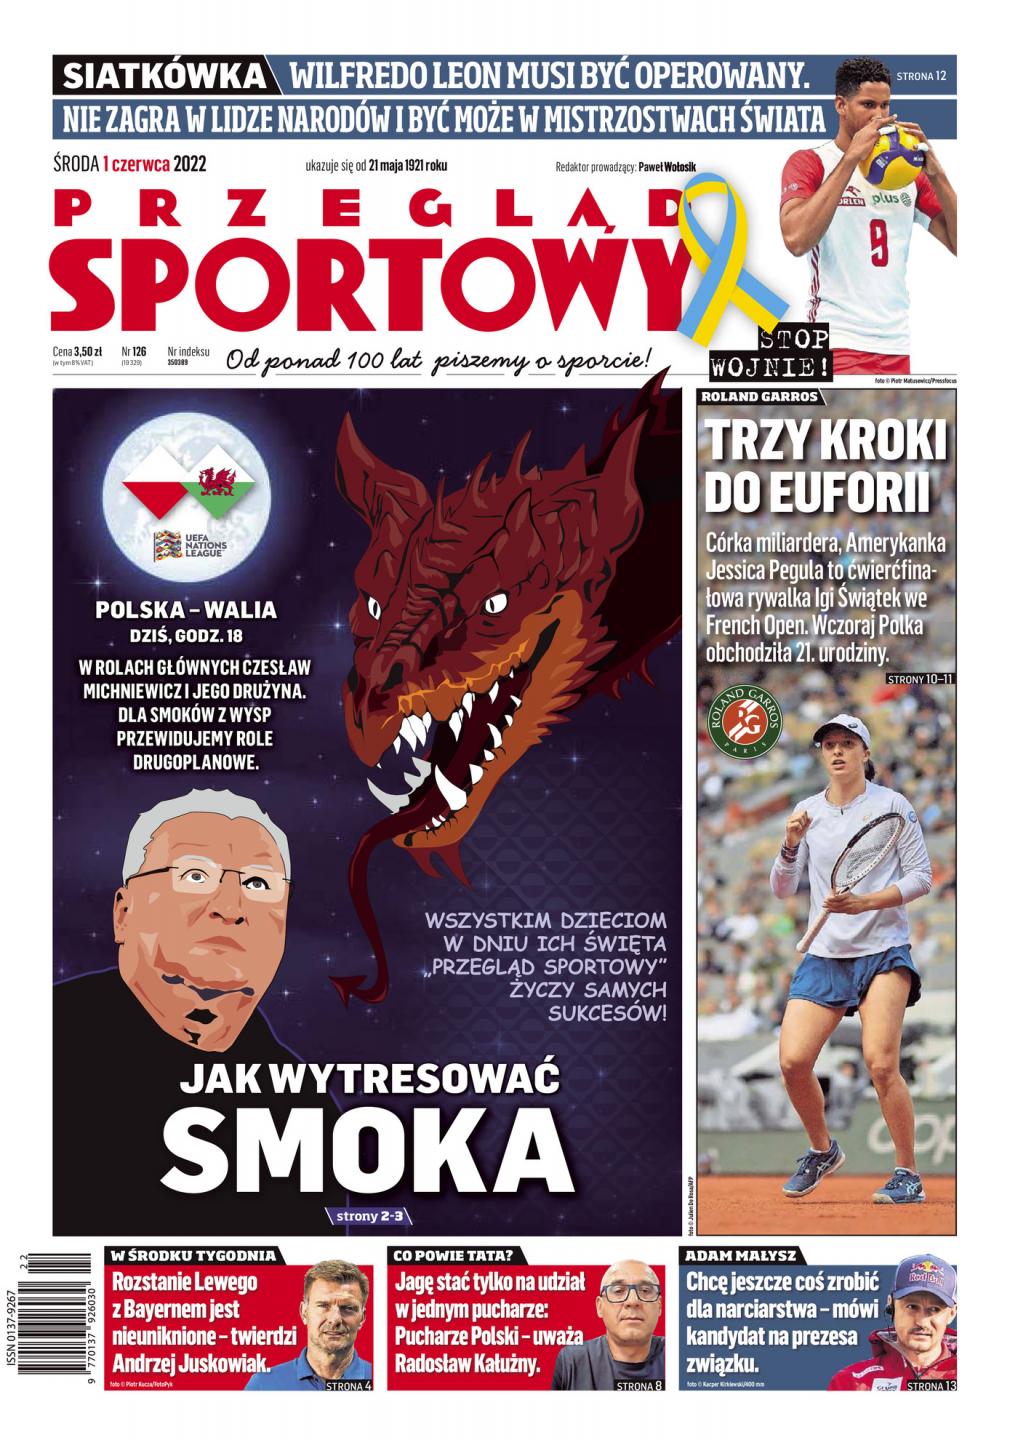 Polska - Walia 2:1 (01.06.2022) Przegląd Sportowy